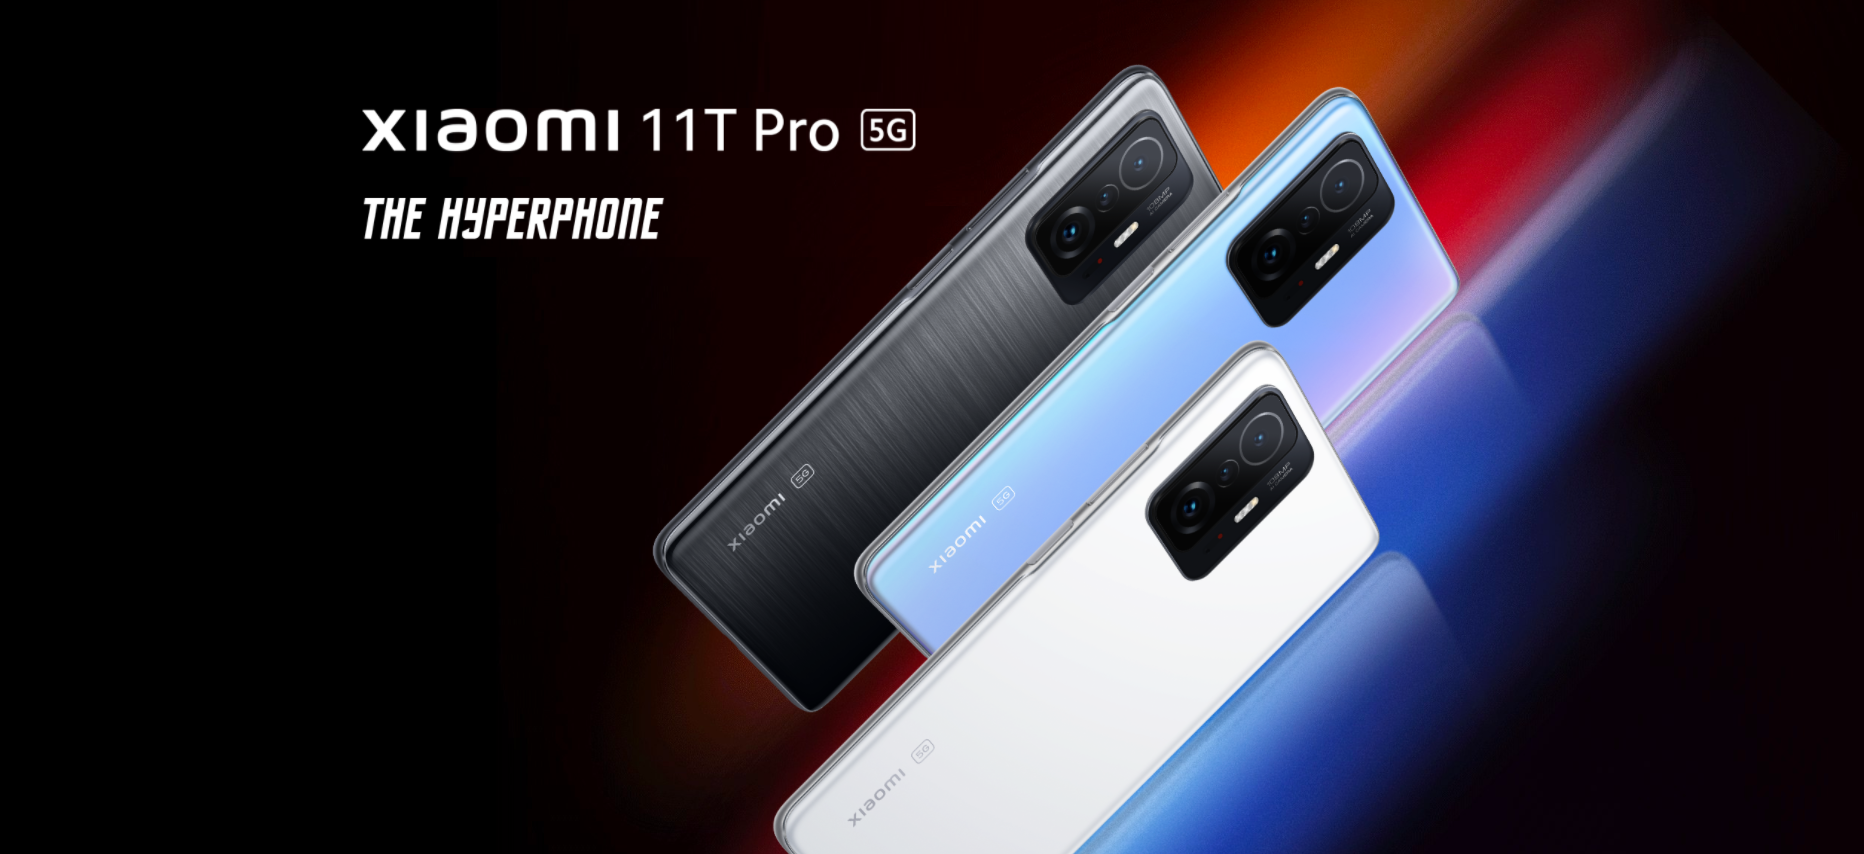 Iperfono Xiaomi 11T Pro - Snapdragon 888, display 120Hz, ricarica 120W e fotocamera da 108MP ad un prezzo bassissimo